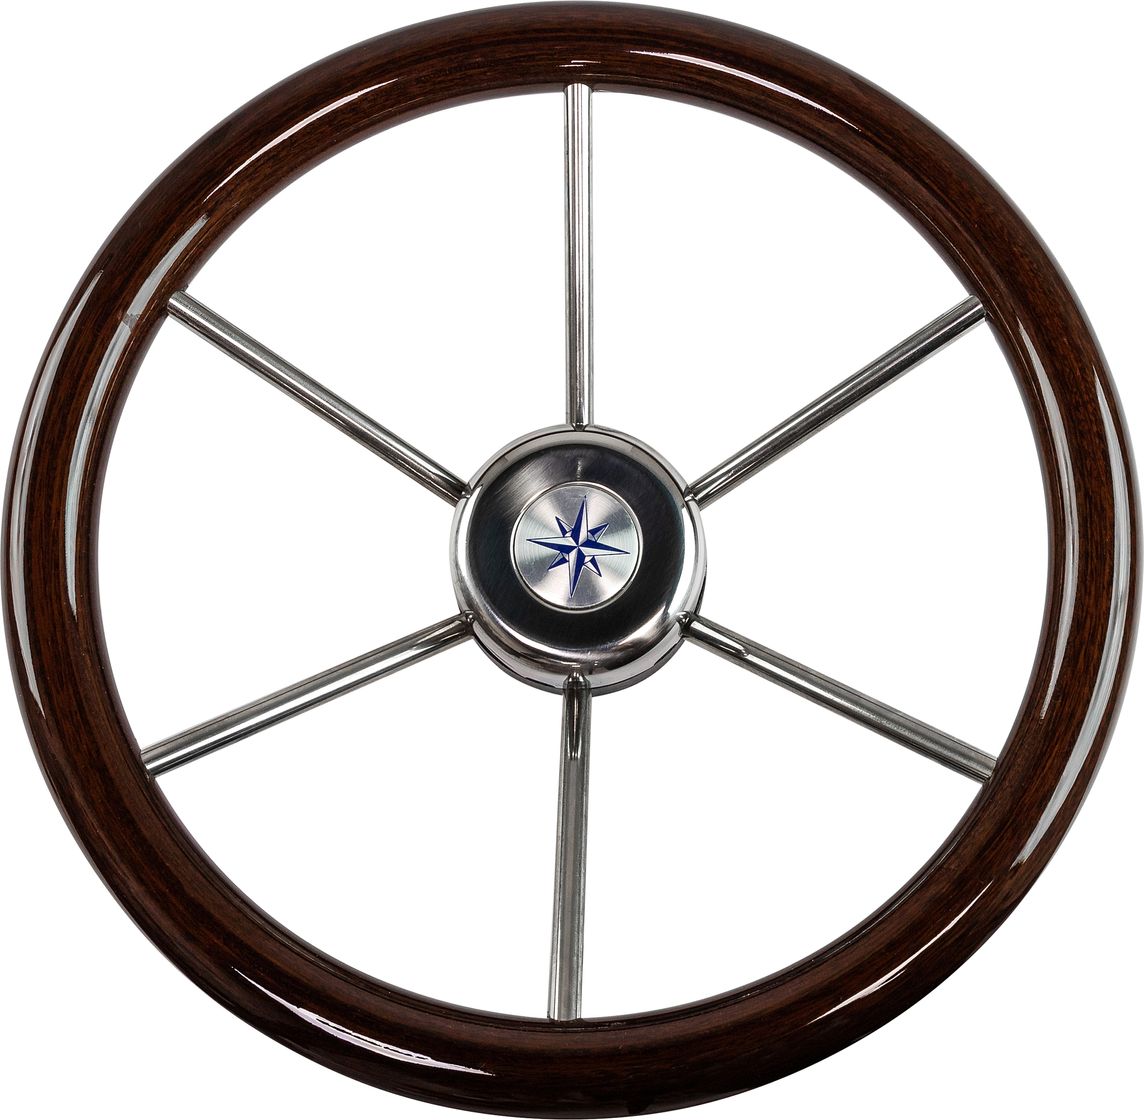 Рулевое колесо LEADER WOOD деревянный обод серебряные спицы д. 360 мм VN7360-33 oscillating multitool wood